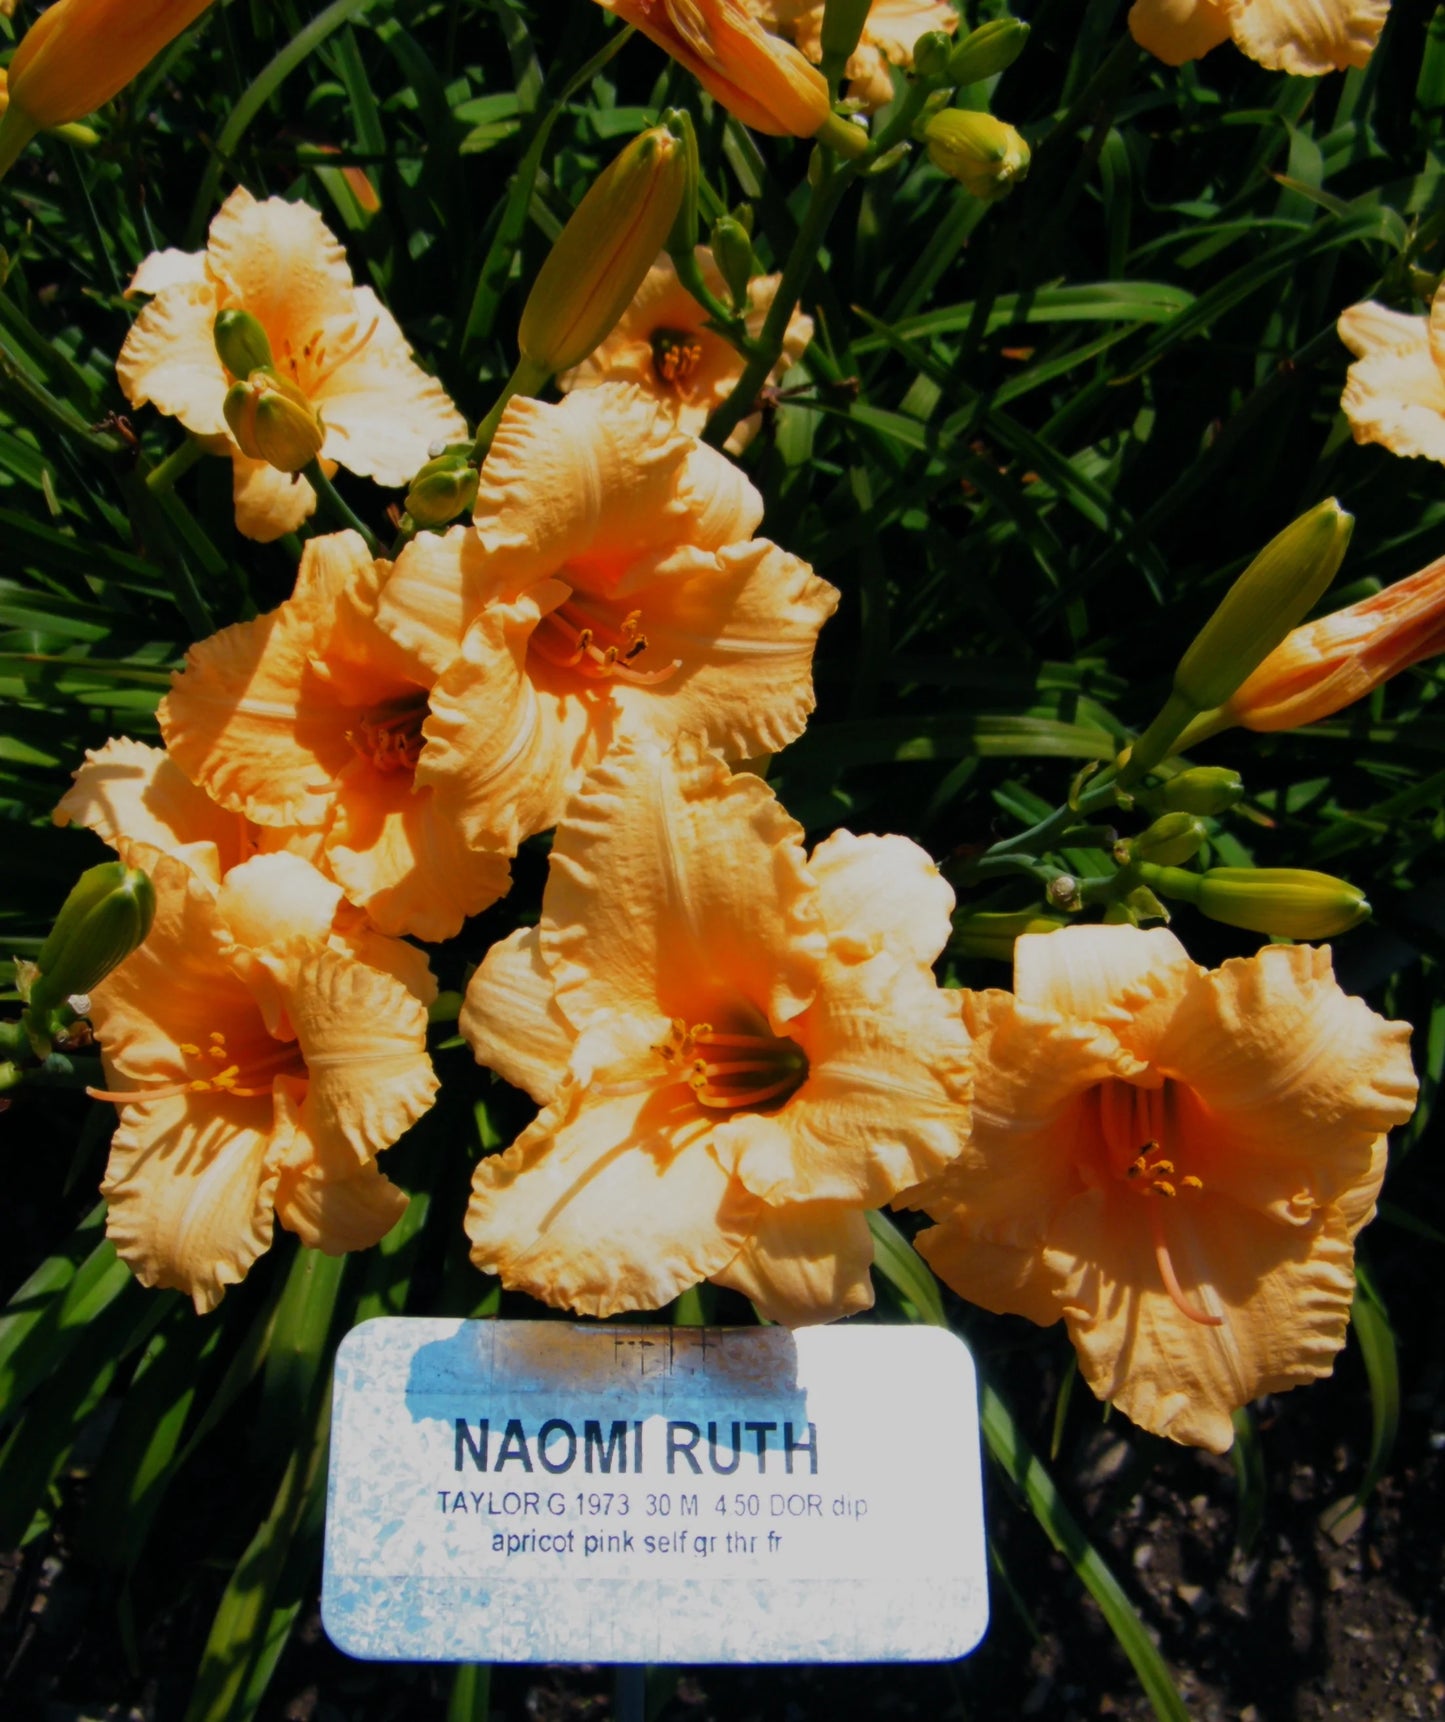 NAOMI RUTH